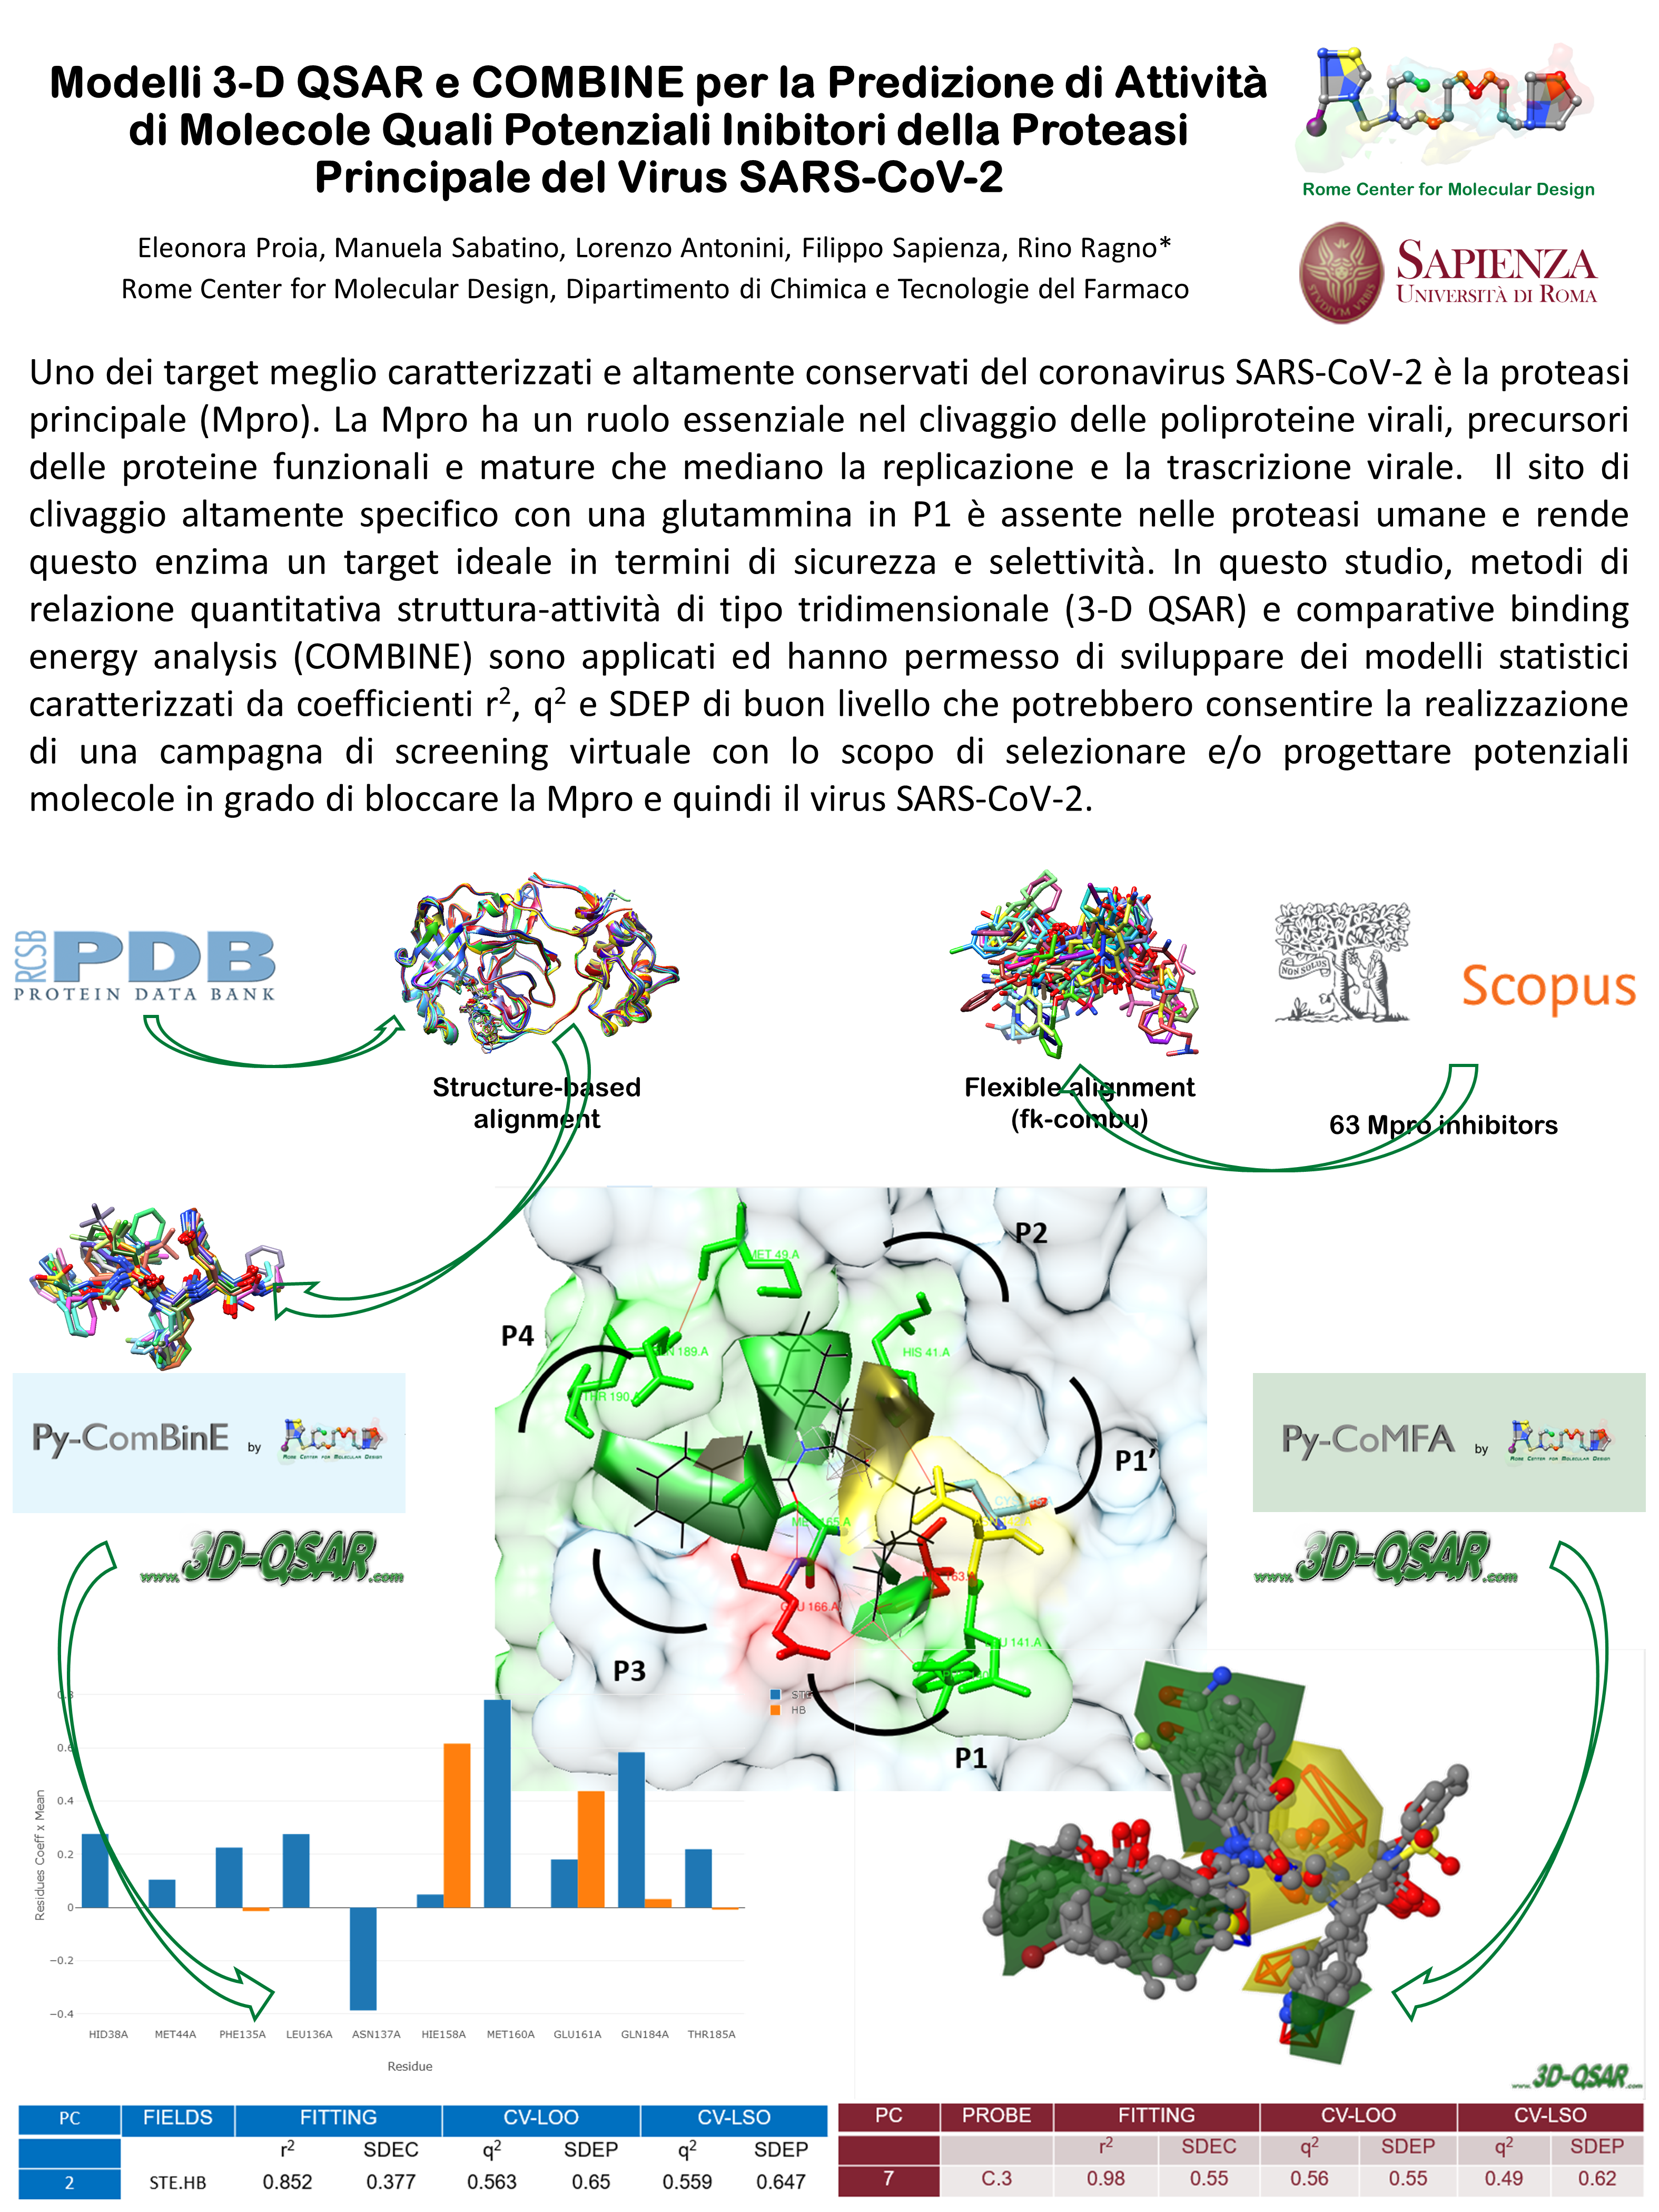 L'uso combinato di dati disponibili in letteratura e di tecnologie di drug design ha permesso di sviluppare modelli predittivi per selezionare potenziali molecole bioattivie nei confronti di SAR-Cov-2 